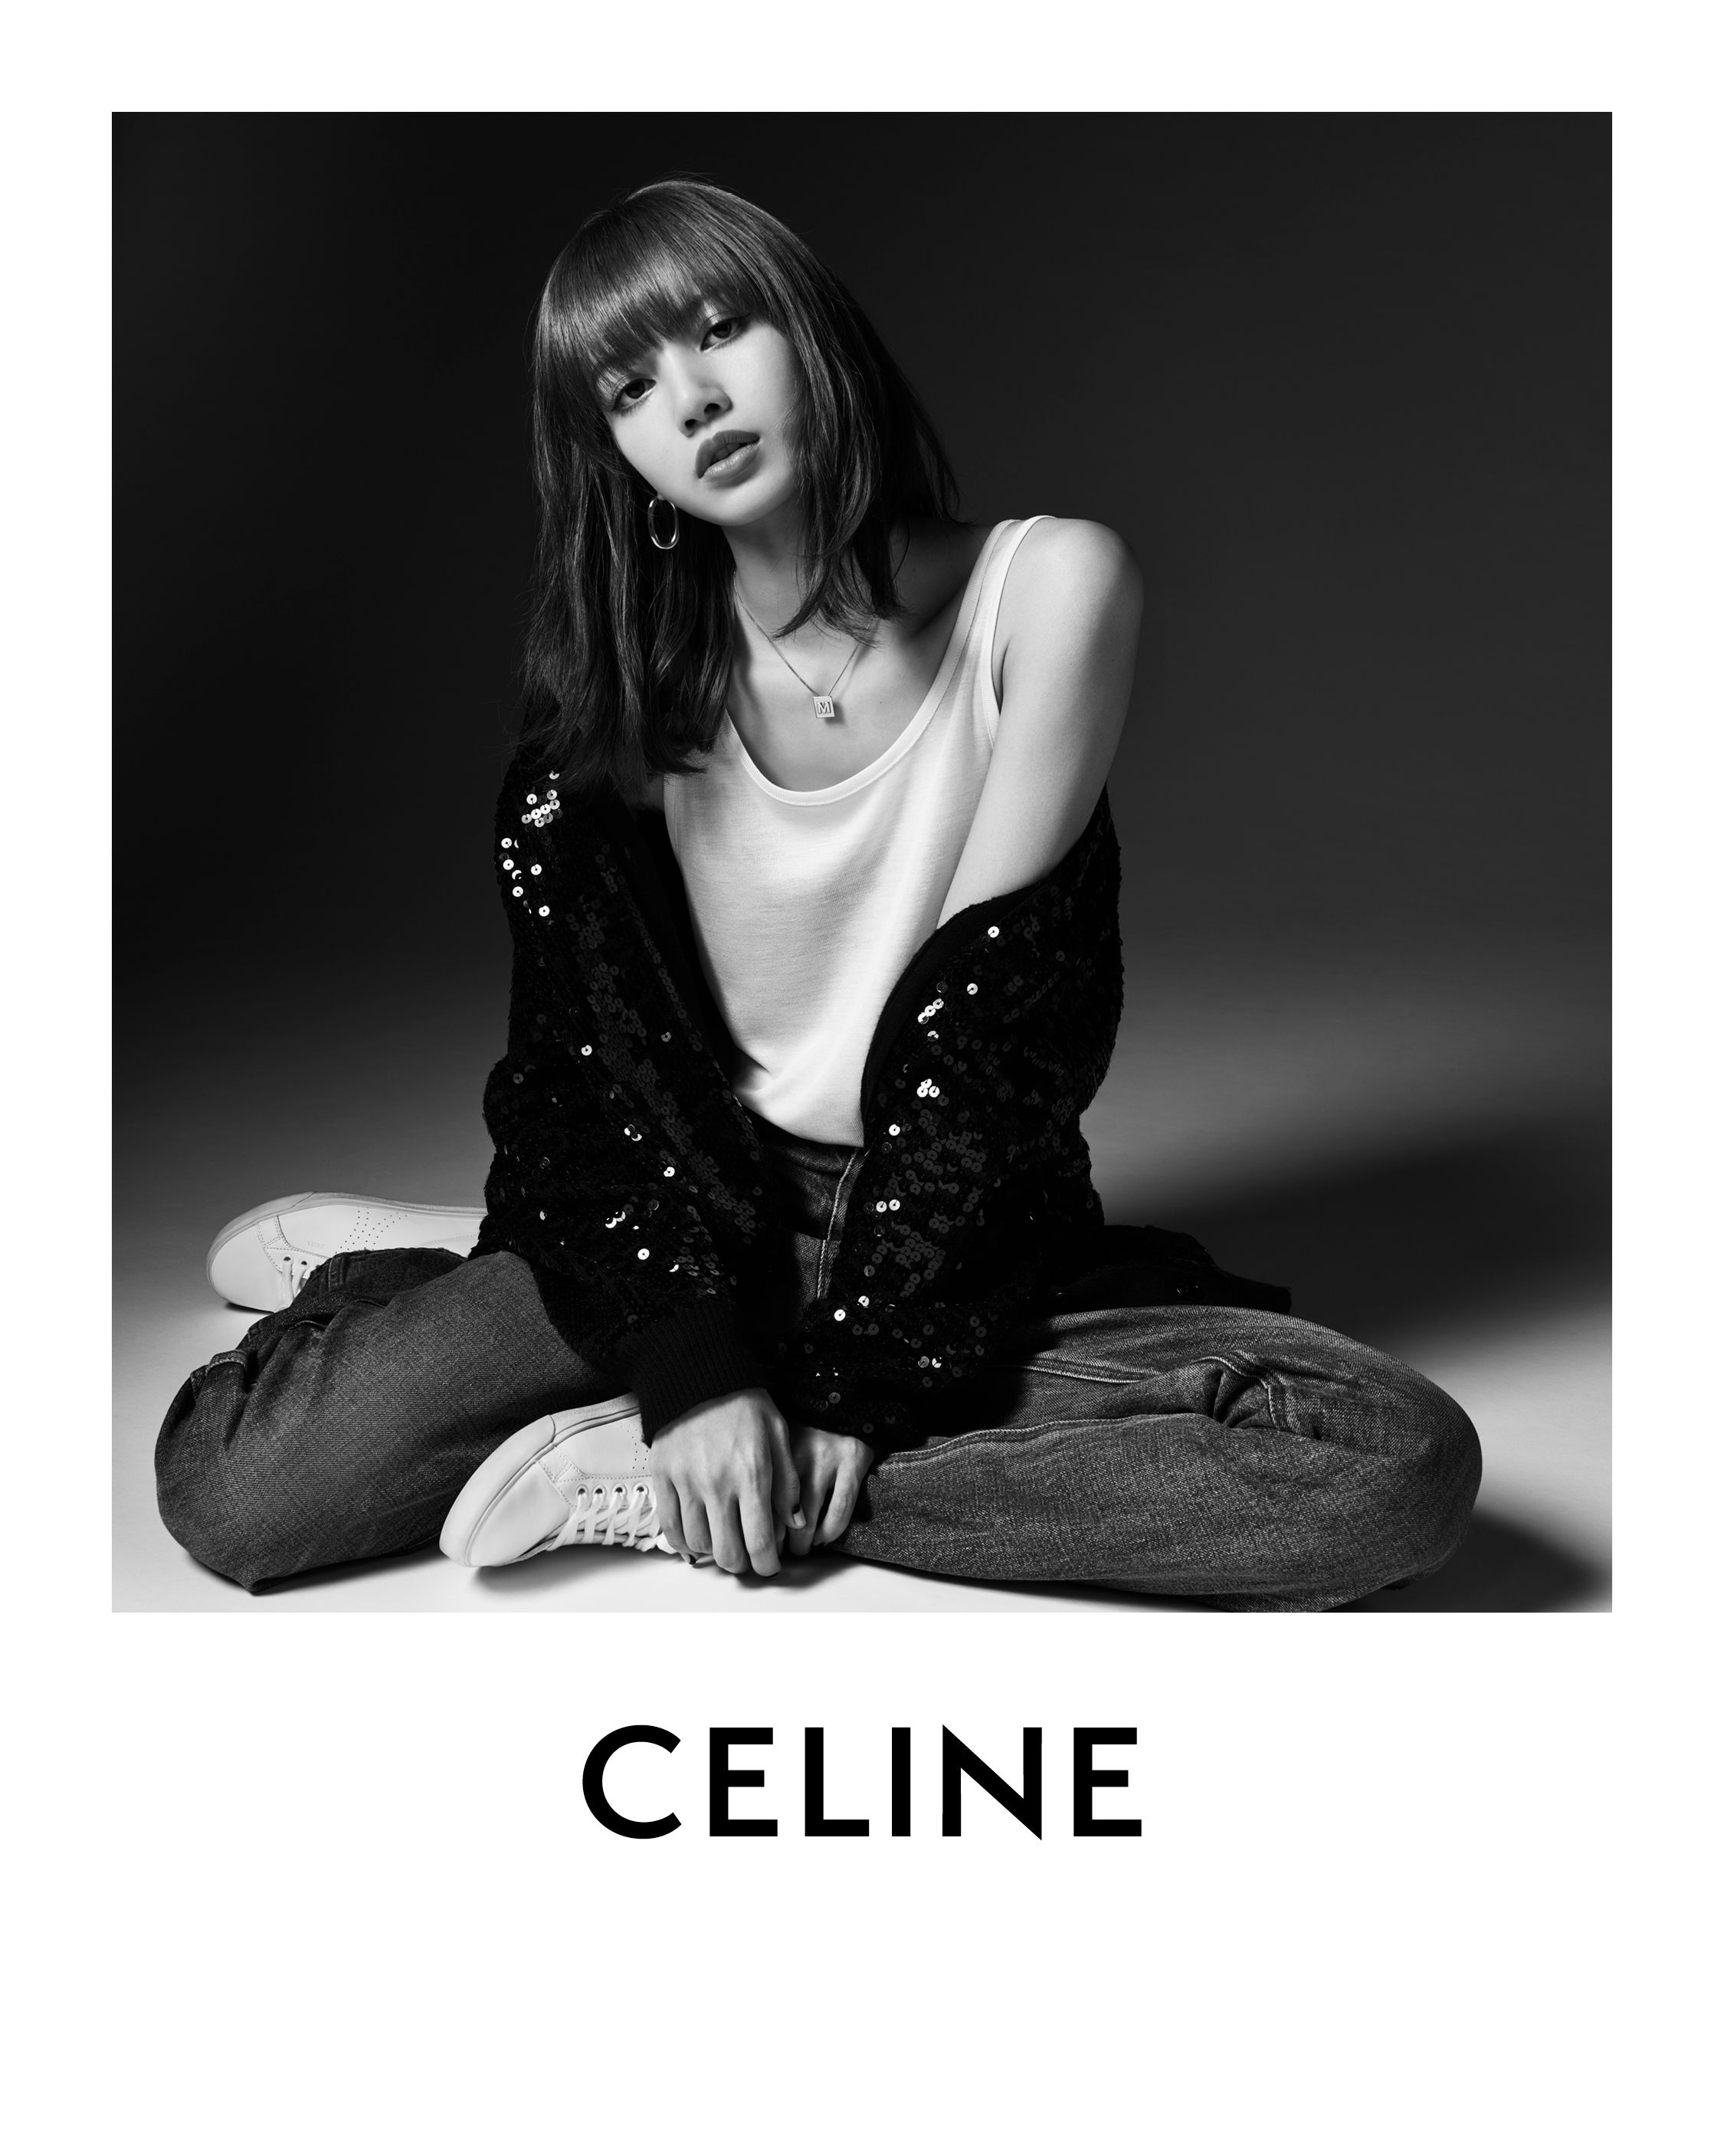 Blackpink S Lisa Is Now A Global Ambassador For Celine